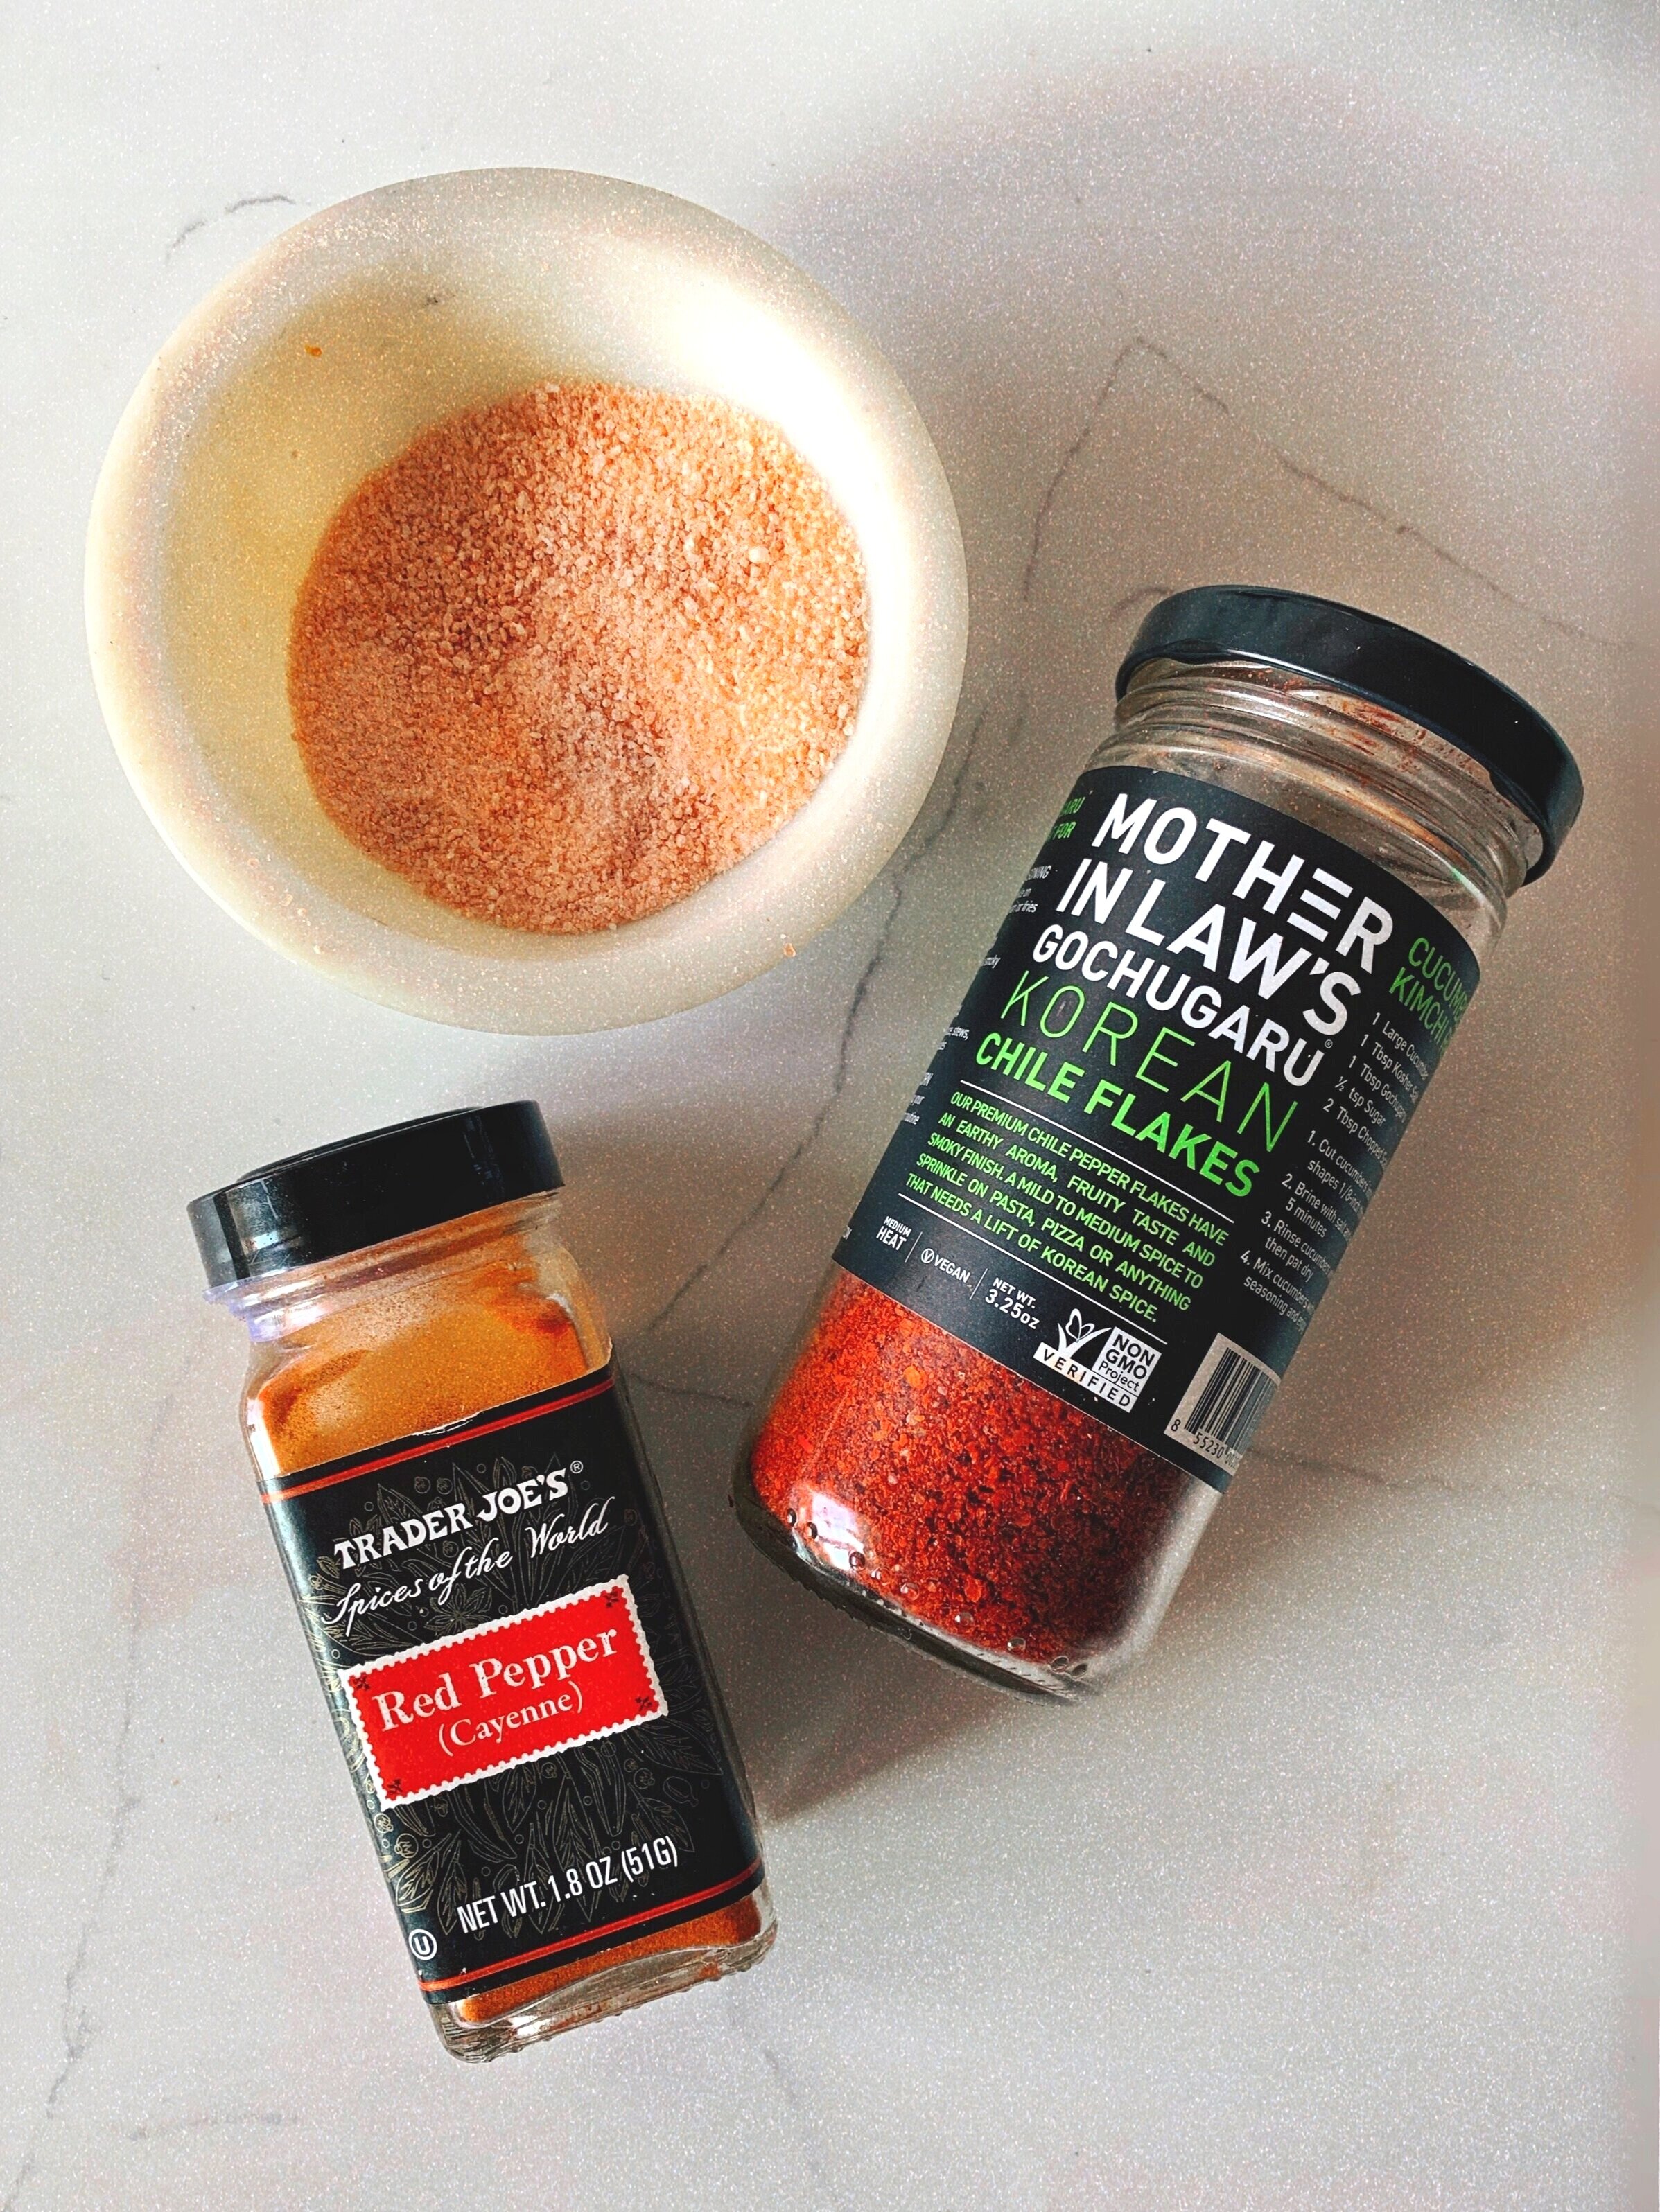 Ingredients to make the homemade chili fruit seasoning